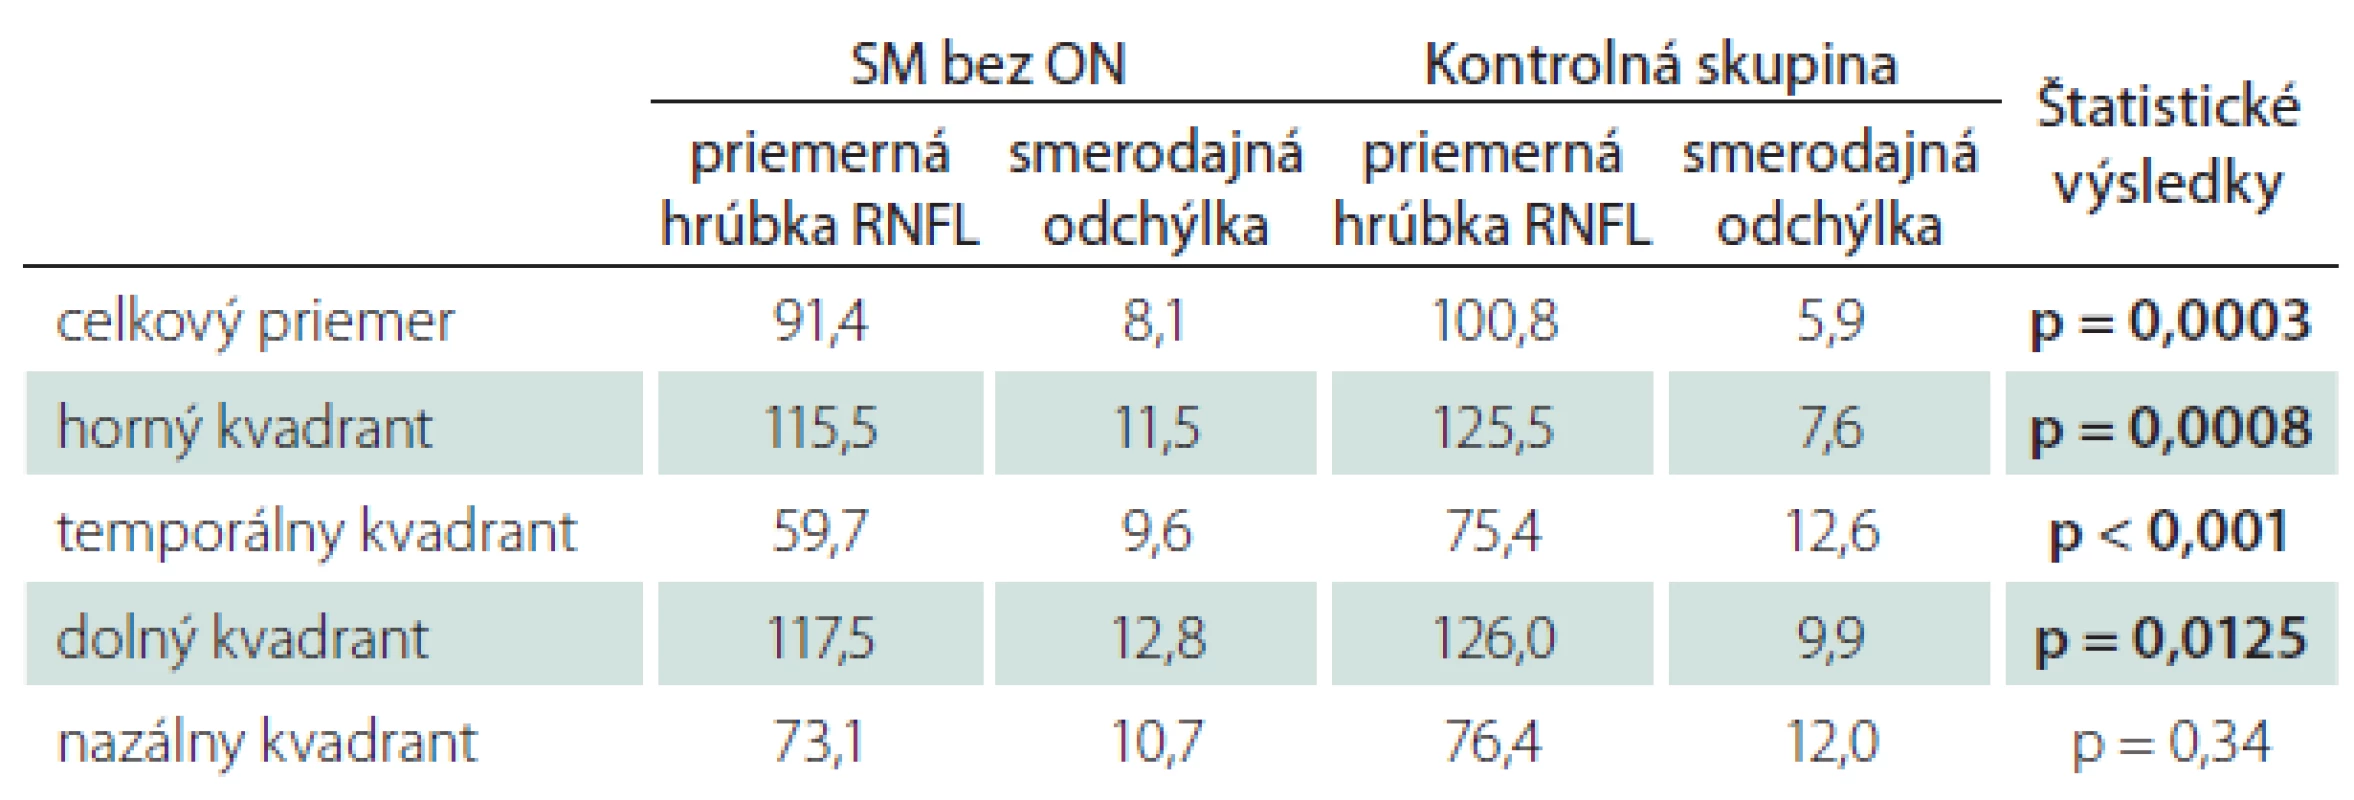 Priemerné hodnoty hrúbky RNFL u pacientov s SM bez ON v anamnéze – štatistické spracovanie.